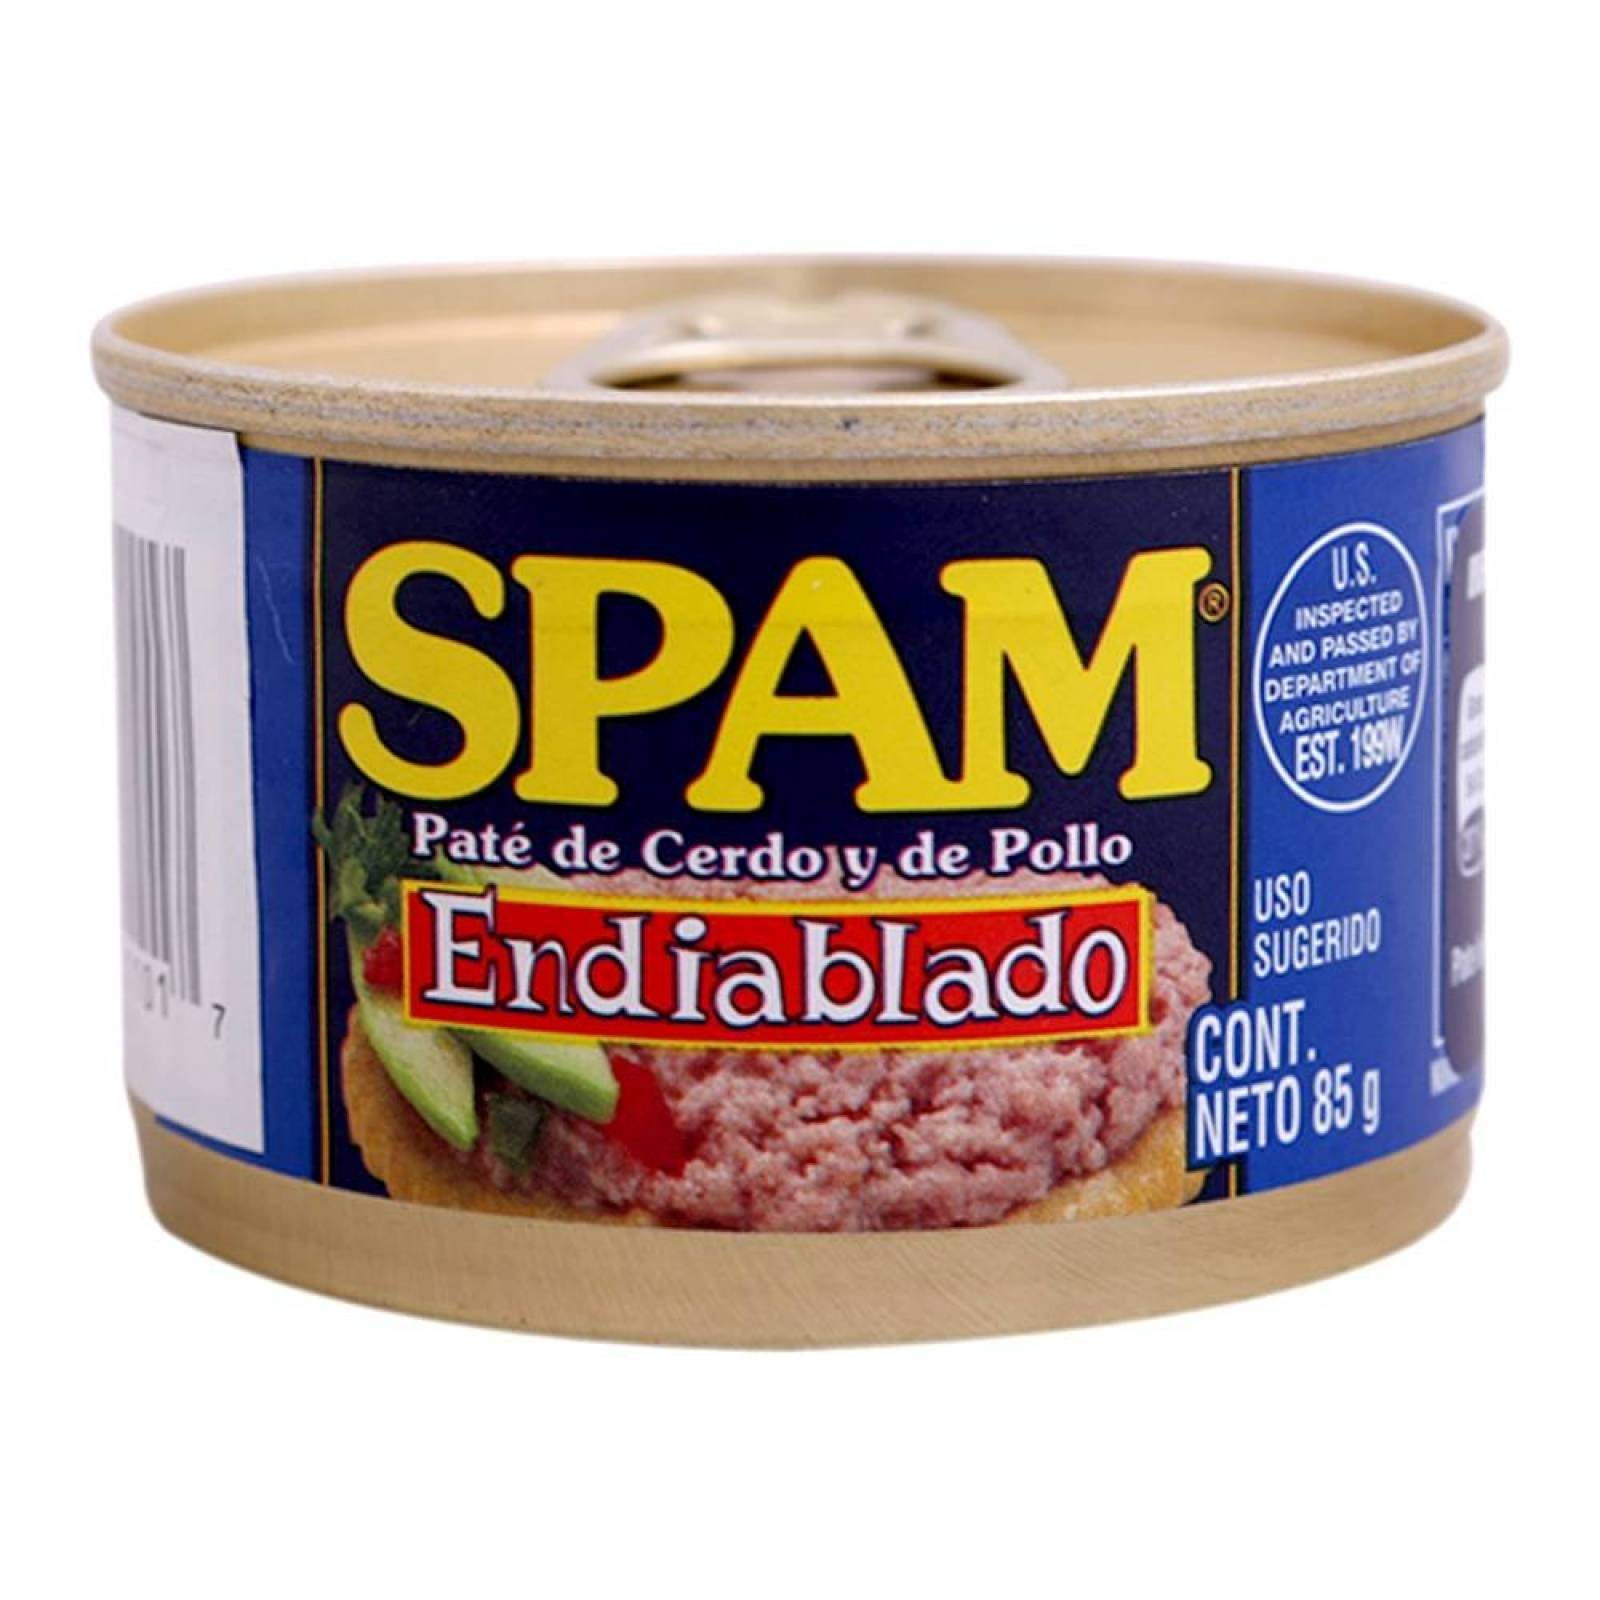 Spam Paté de Cerdo y Pollo Endiablado lata 85g